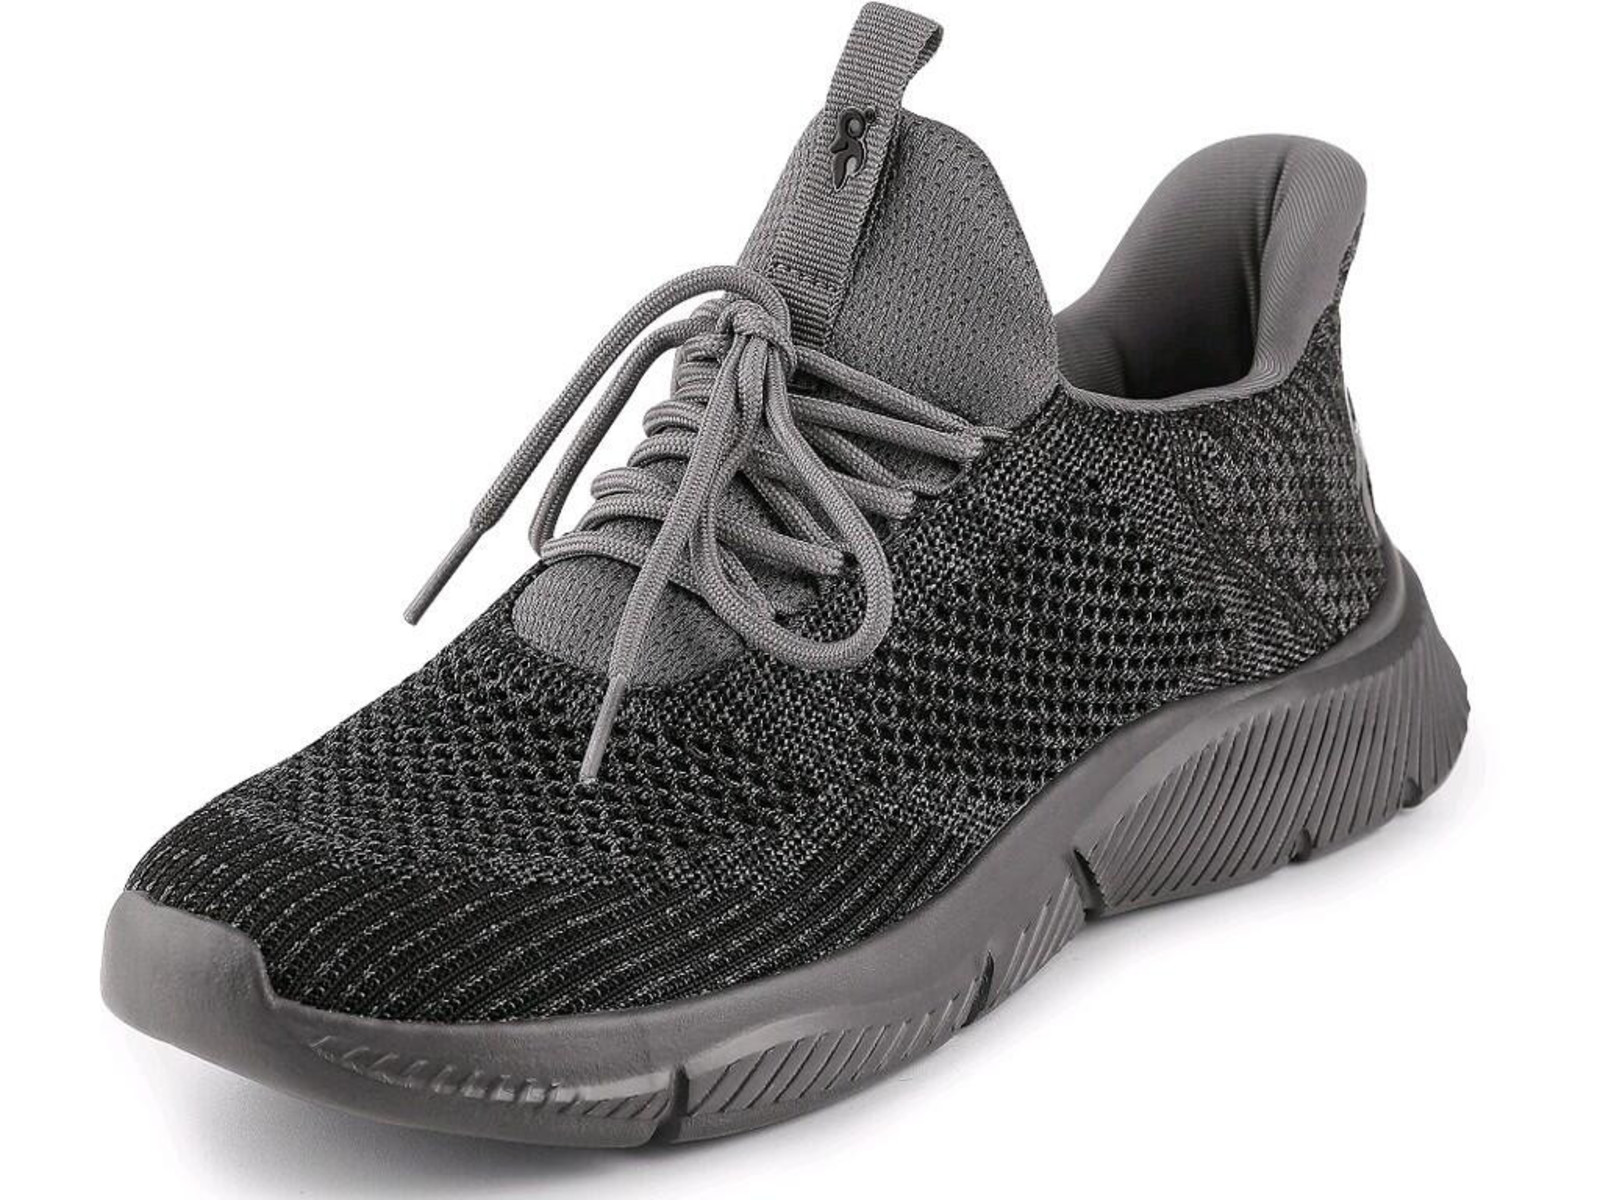 Voľnočasová obuv CXS Island Barbados - veľkosť: 40, farba: sivá/čierna